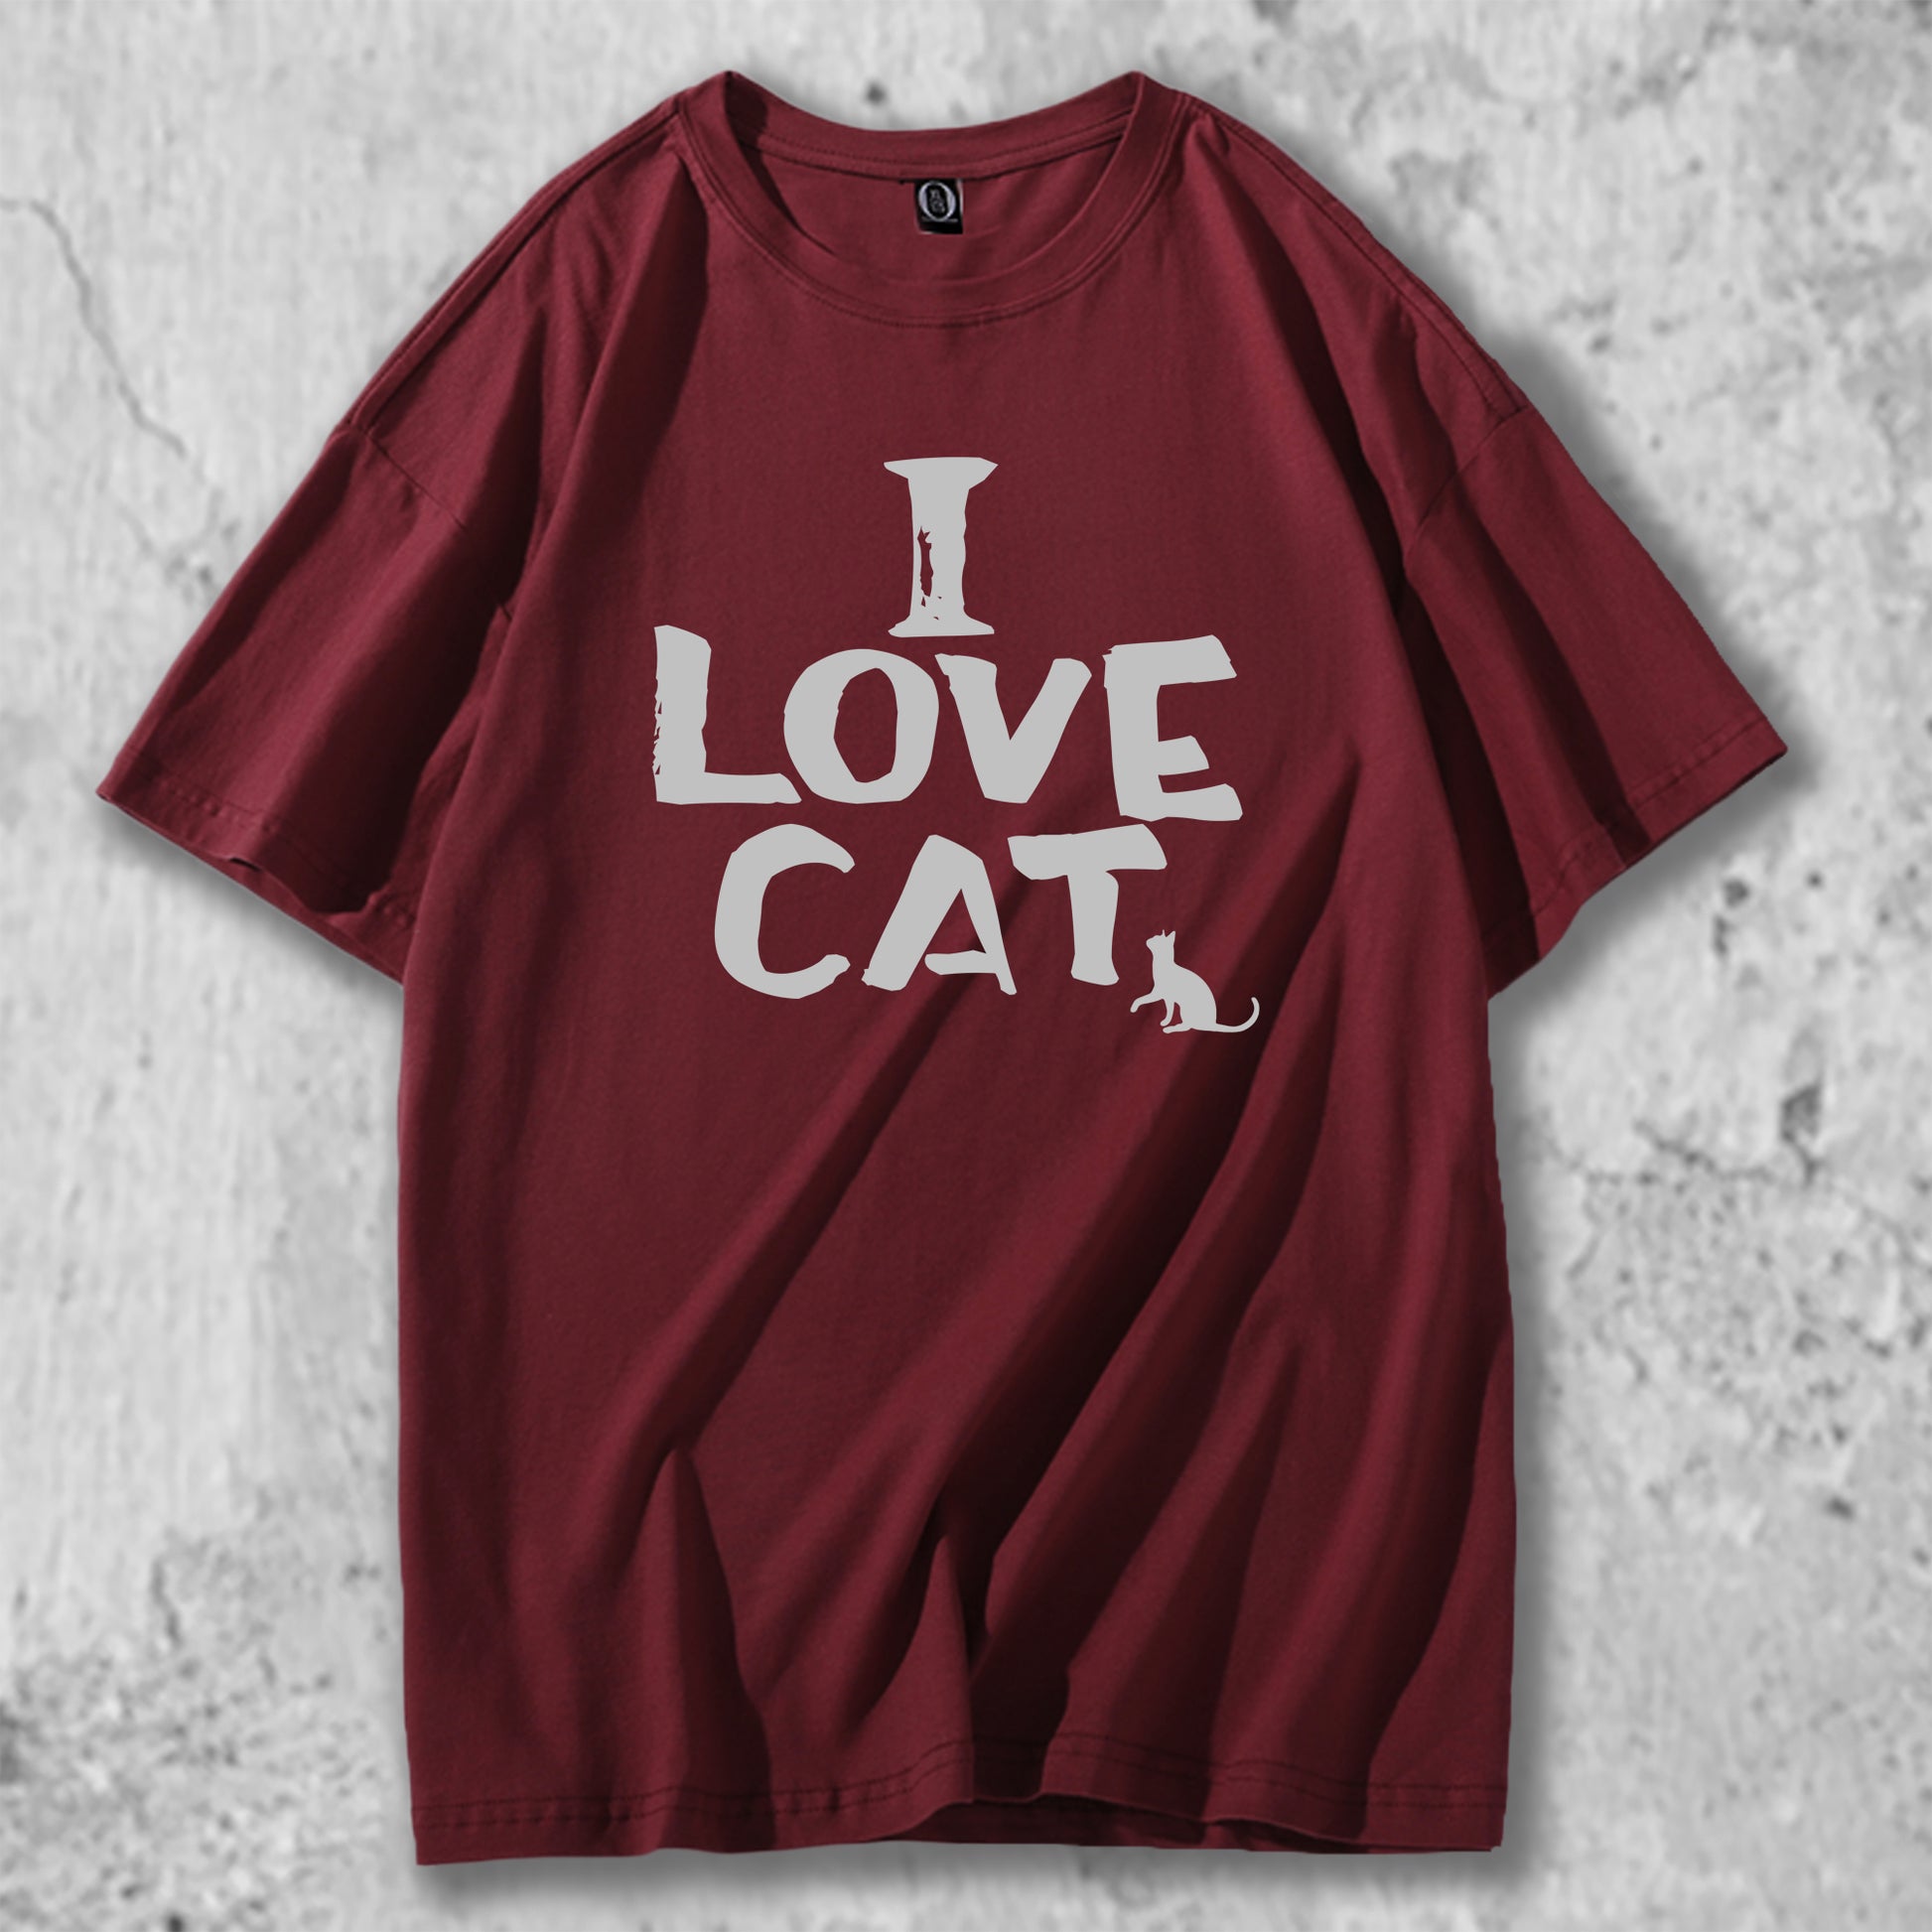 I LOVE CATと書かれたＴシャツのレッド